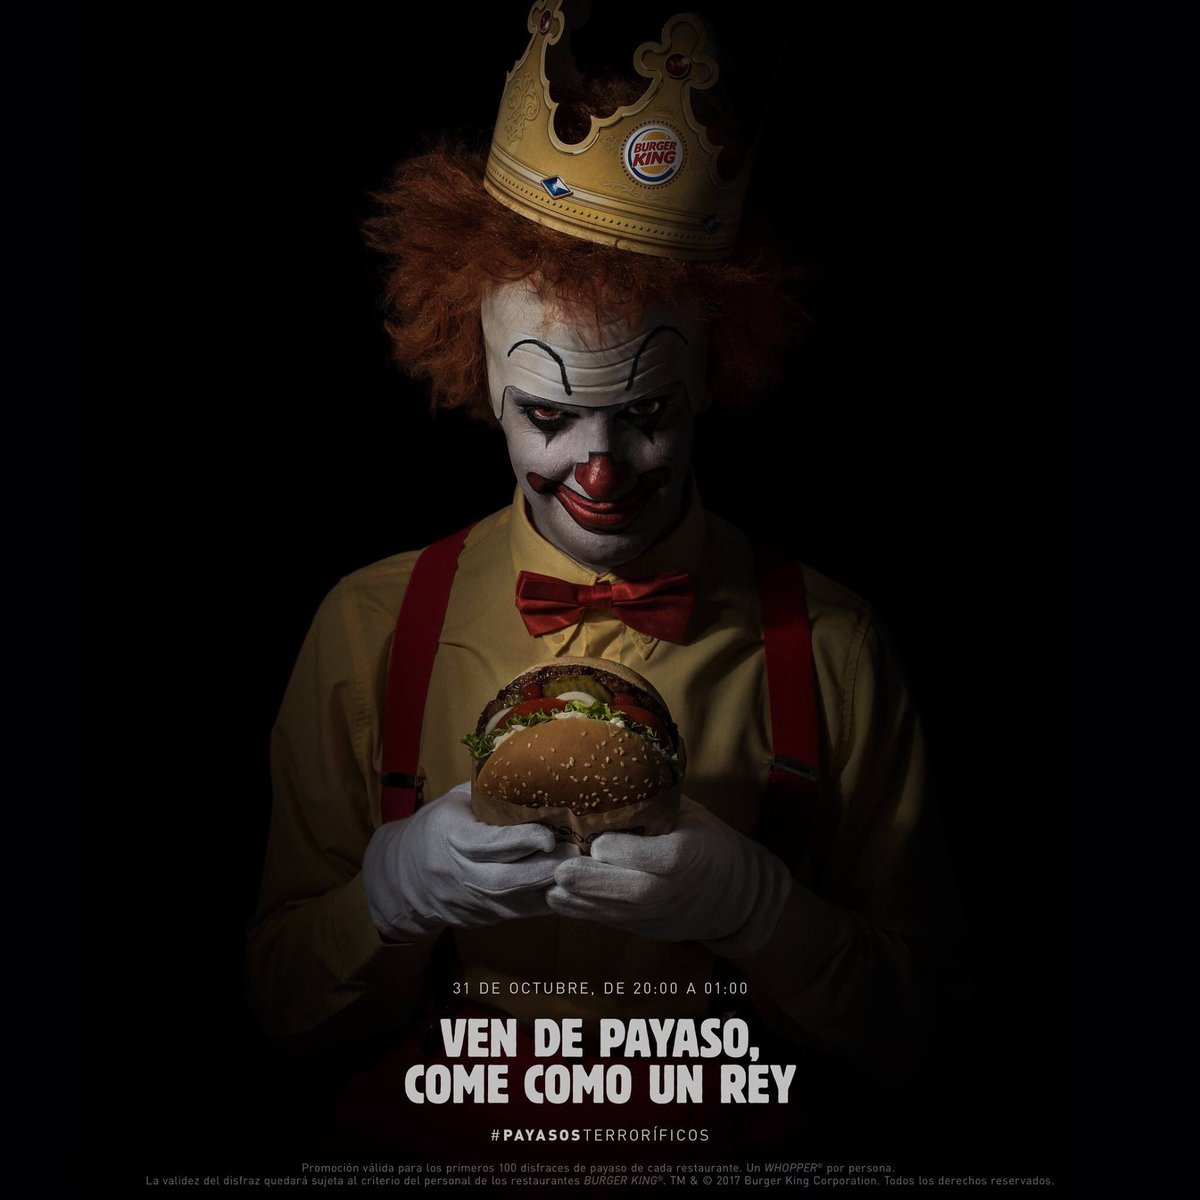 Twitter 上的 Buena King regalará en Halloween un Whopper a los que vayan a sus restaurantes disfrazados de payaso. Un golpe más a @McDonalds /